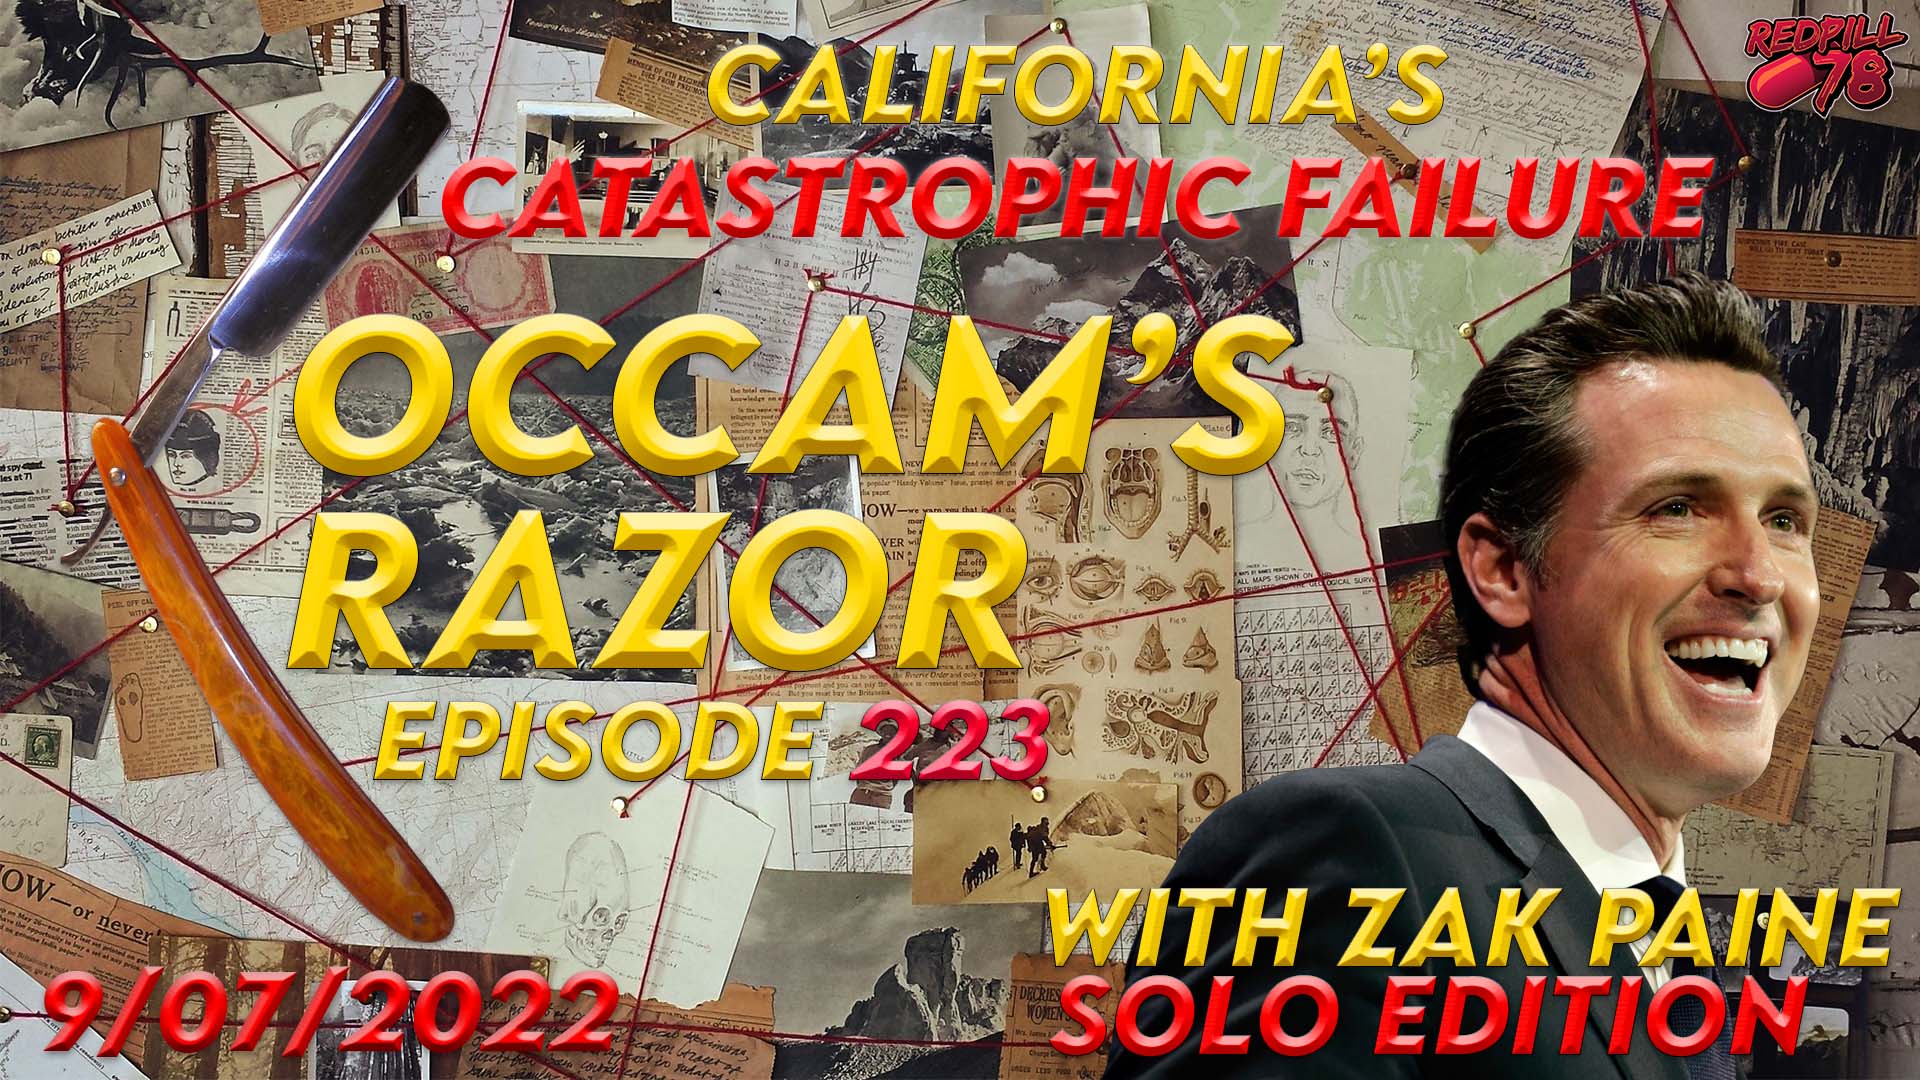 Newsom Drops the Ball - California’s Grid Failure on Occam’s Razor Ep. 223